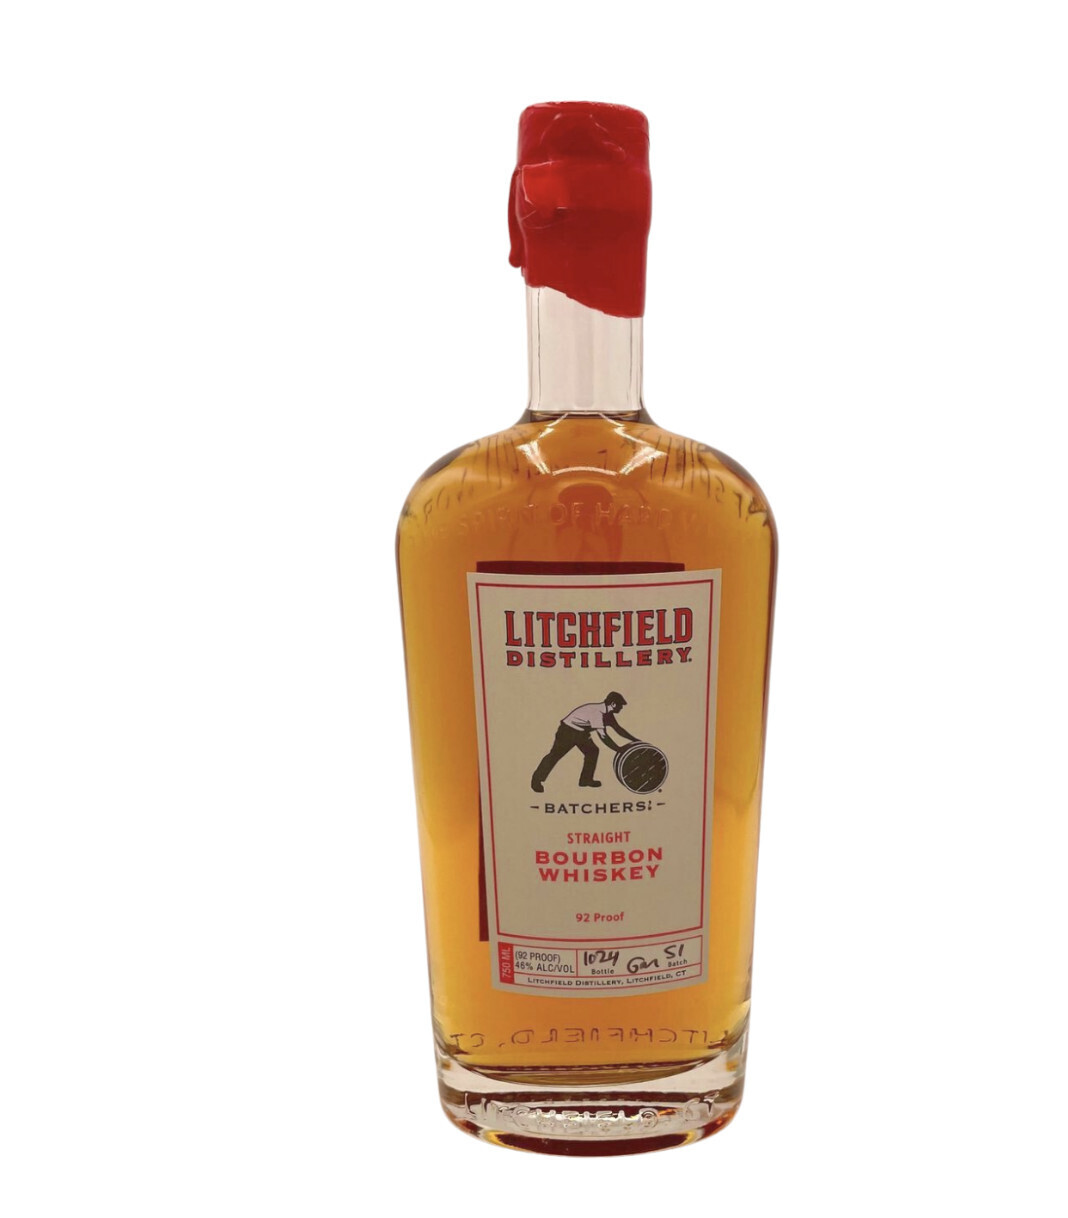 Litchfield Batchers' Bourbon